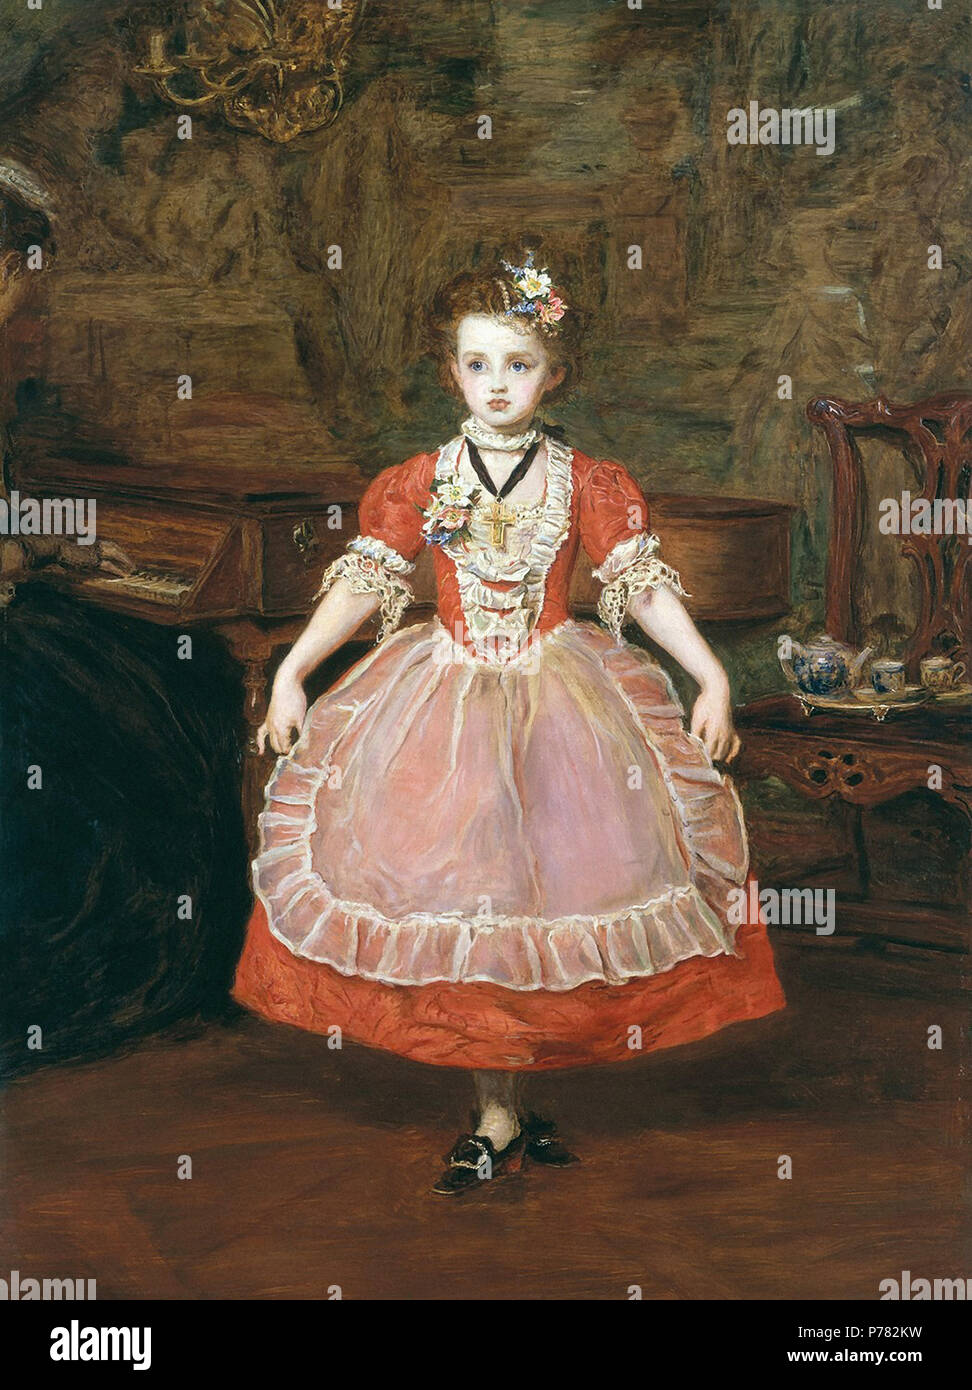 Бал юлии мышковской 1896 название. John Everett Millais( 1829-1896). Джон Эверетт Милле. Джон Эверетт Милле Эффи. Джон Эверетт Милле картины.